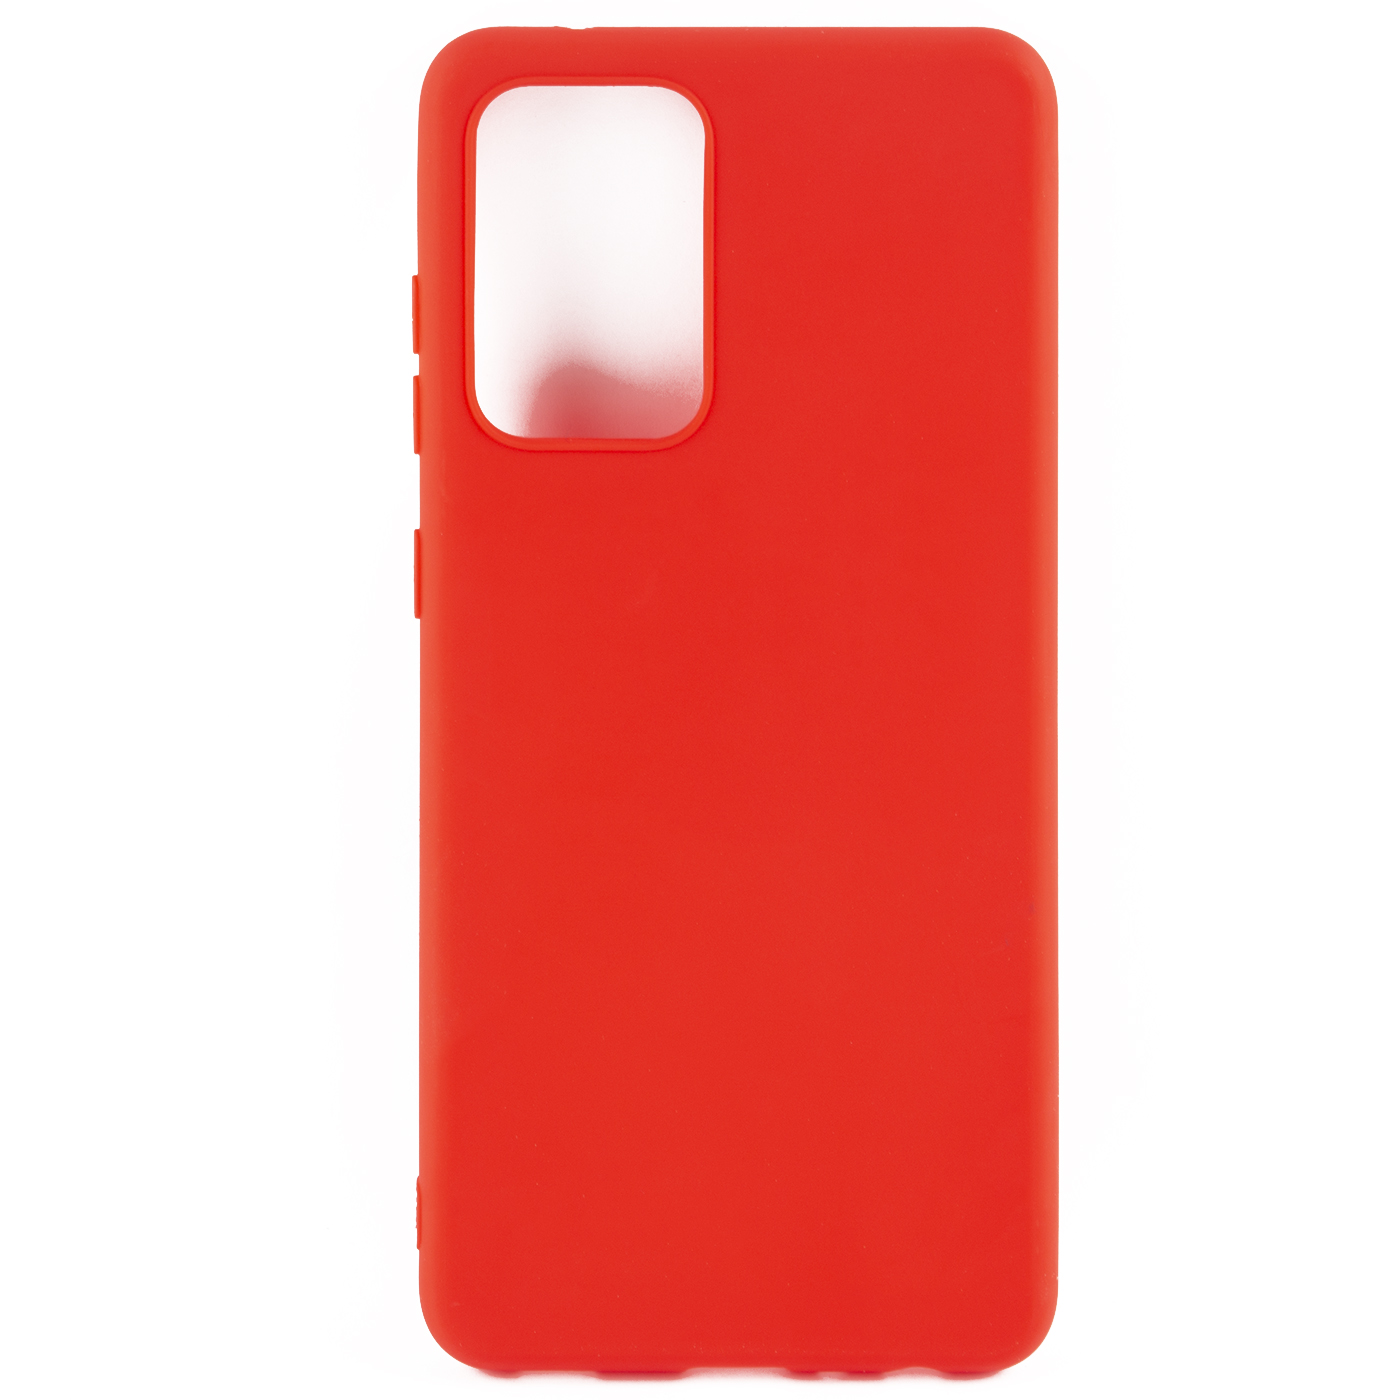 Чехол защитный Red Line Ultimate для Samsung Galaxy A52, красный УТ000024012 защитный чехол red line ultimate для samsung galaxy a52 черный